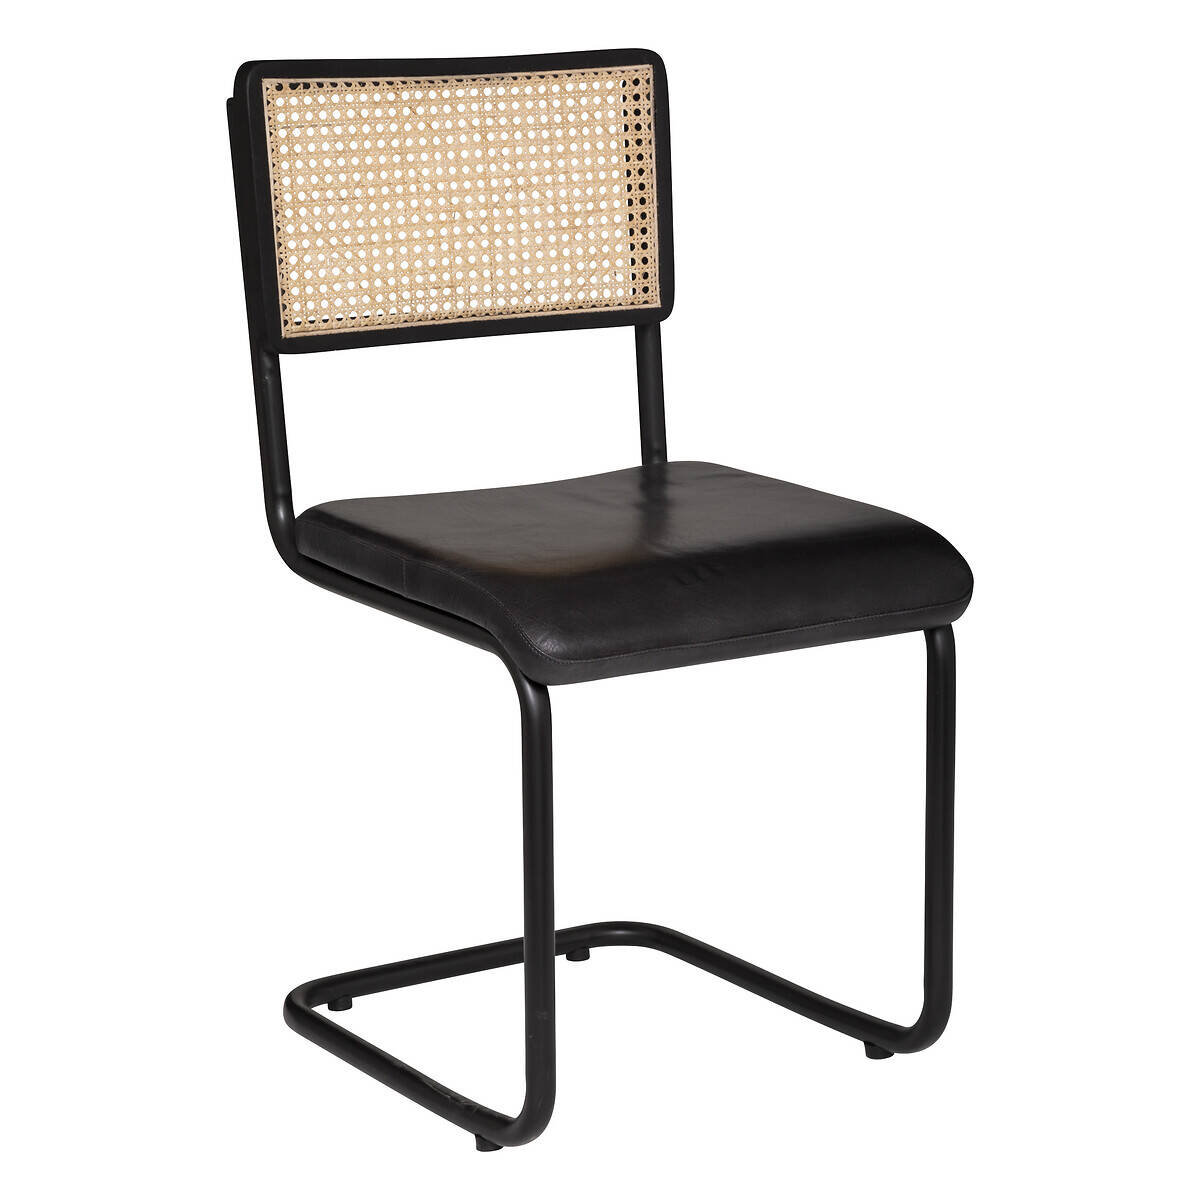 Krzesło retro KIZAR, rattanowa plecionka, skórzane siedzisko, w typie bauhaus